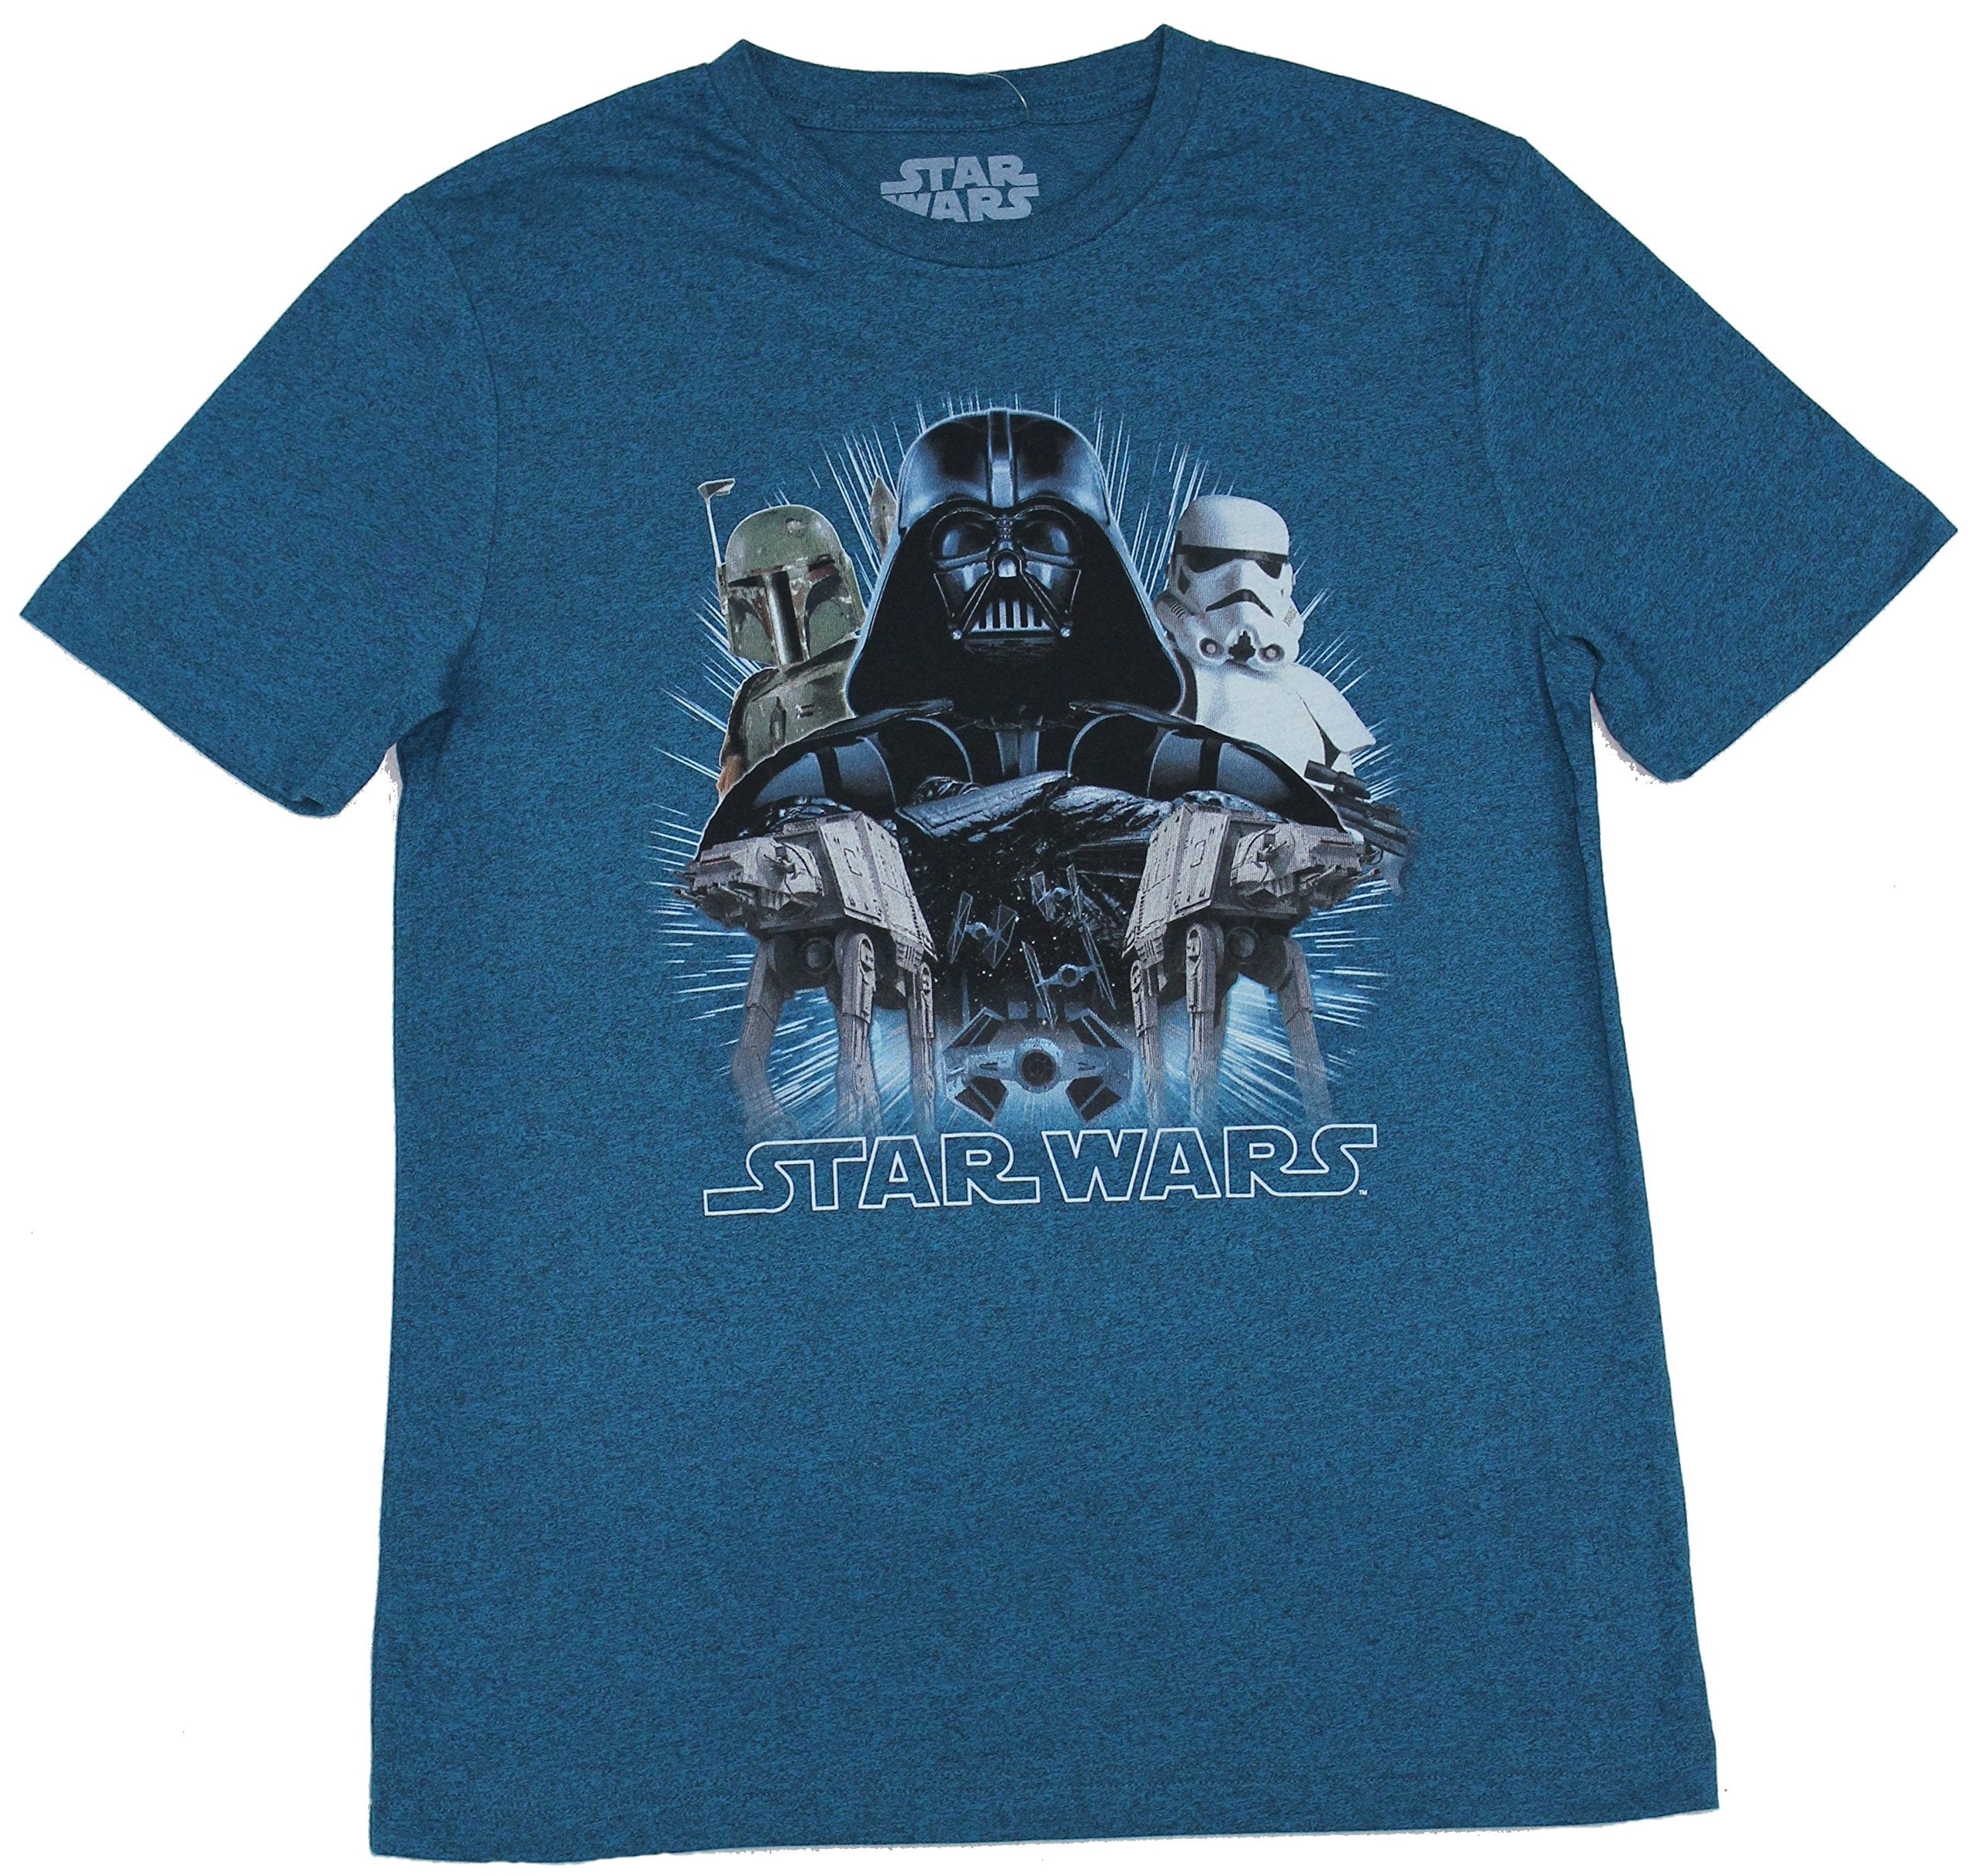 Star Wars Mens T-Shirt -Darth Vader Boba Fett Trooper over Imperial Army (Medium) -